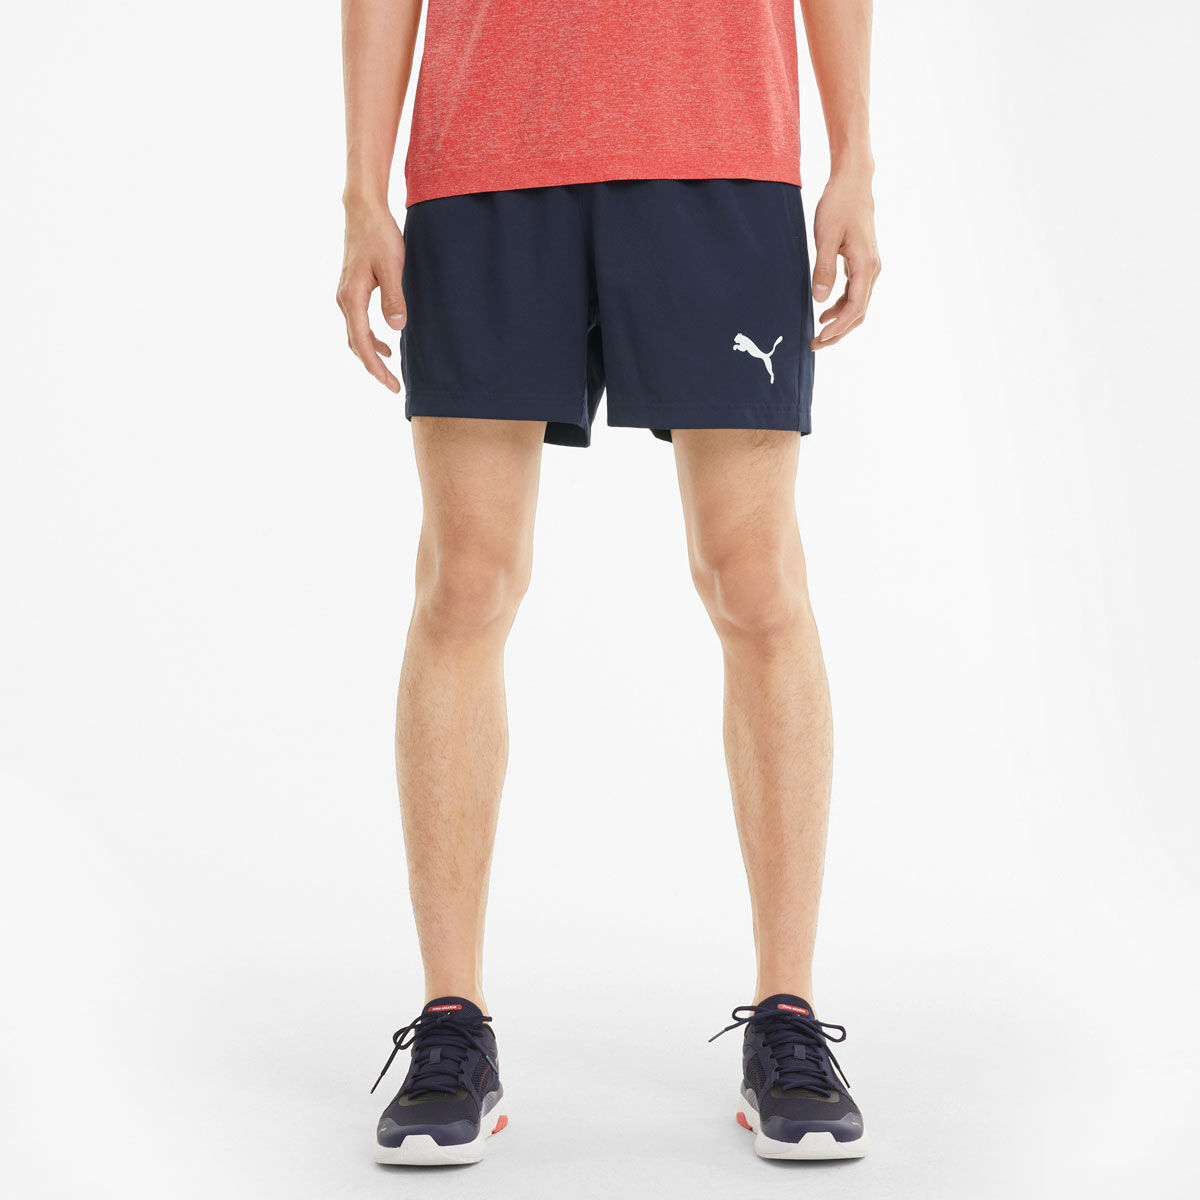 Men's Shorts | Gym, Workout & Running Shorts | rebel